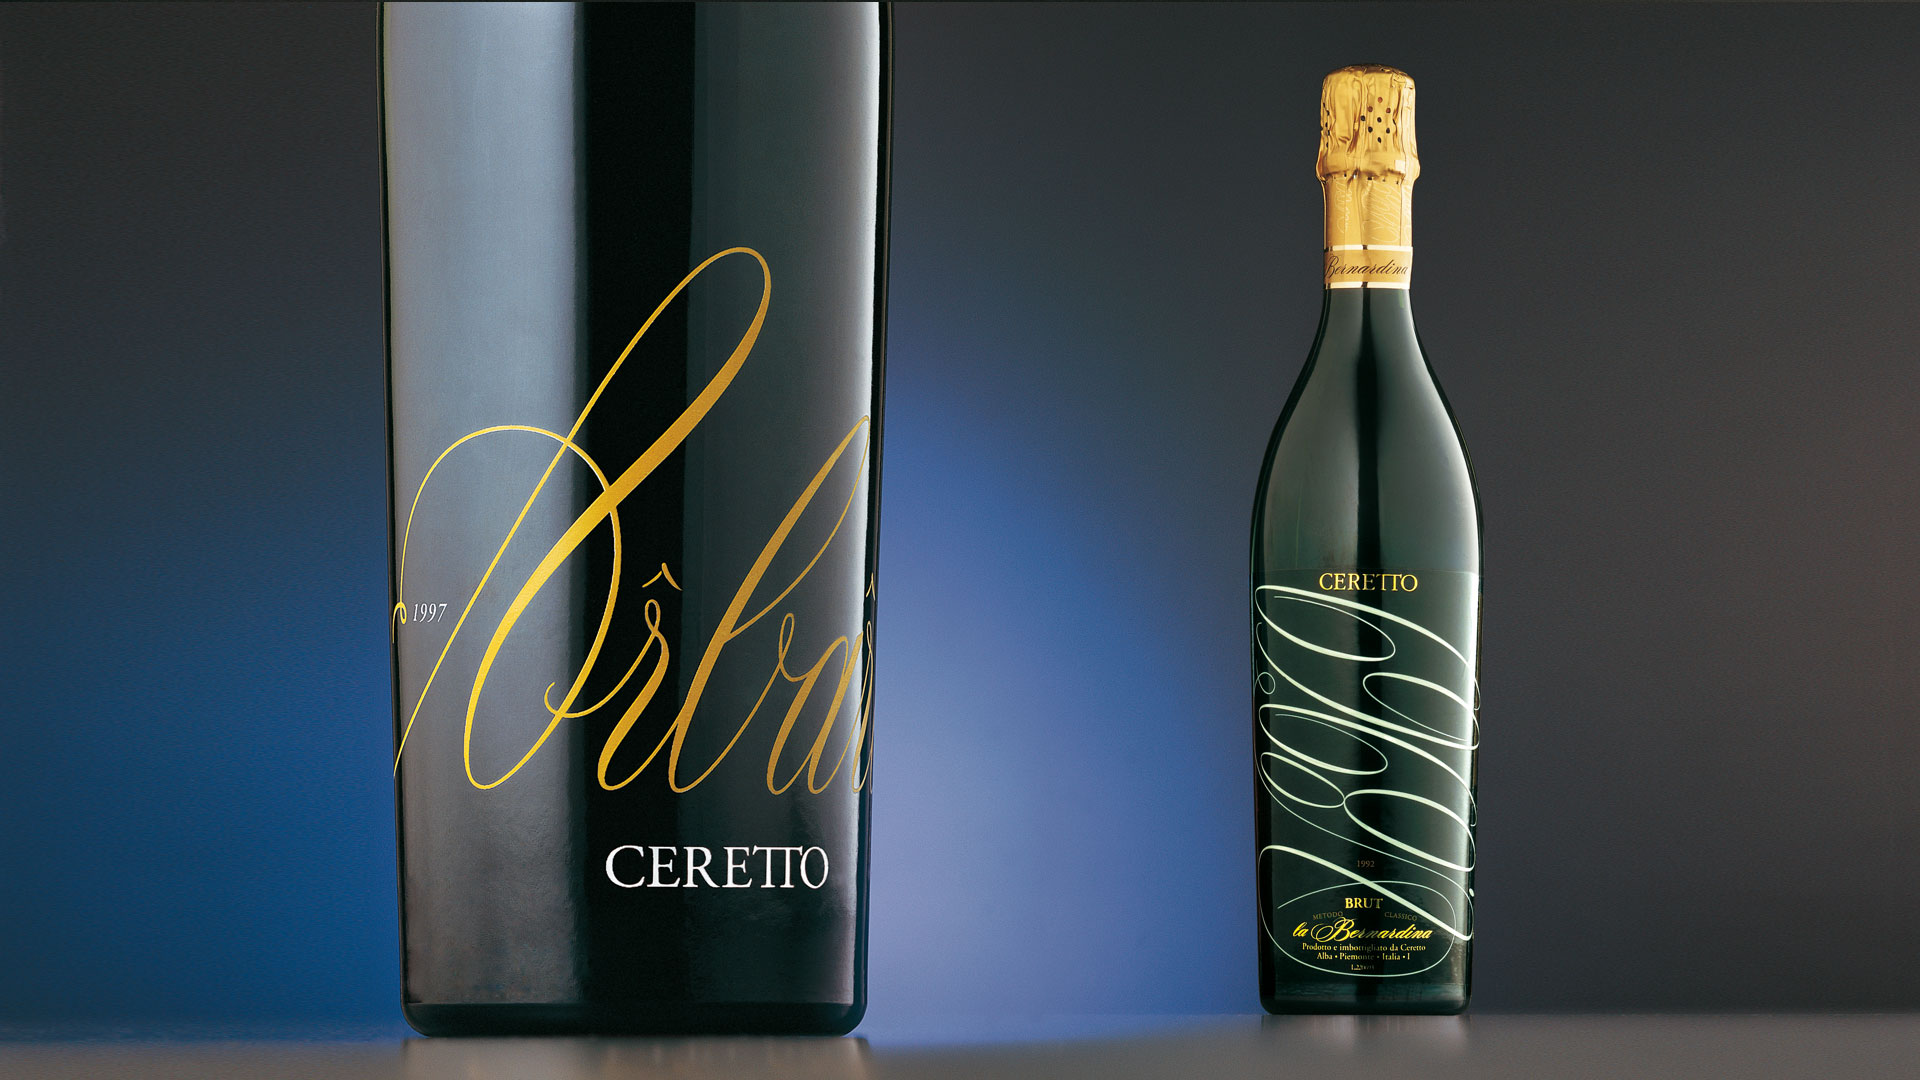 Ceretto bottle design